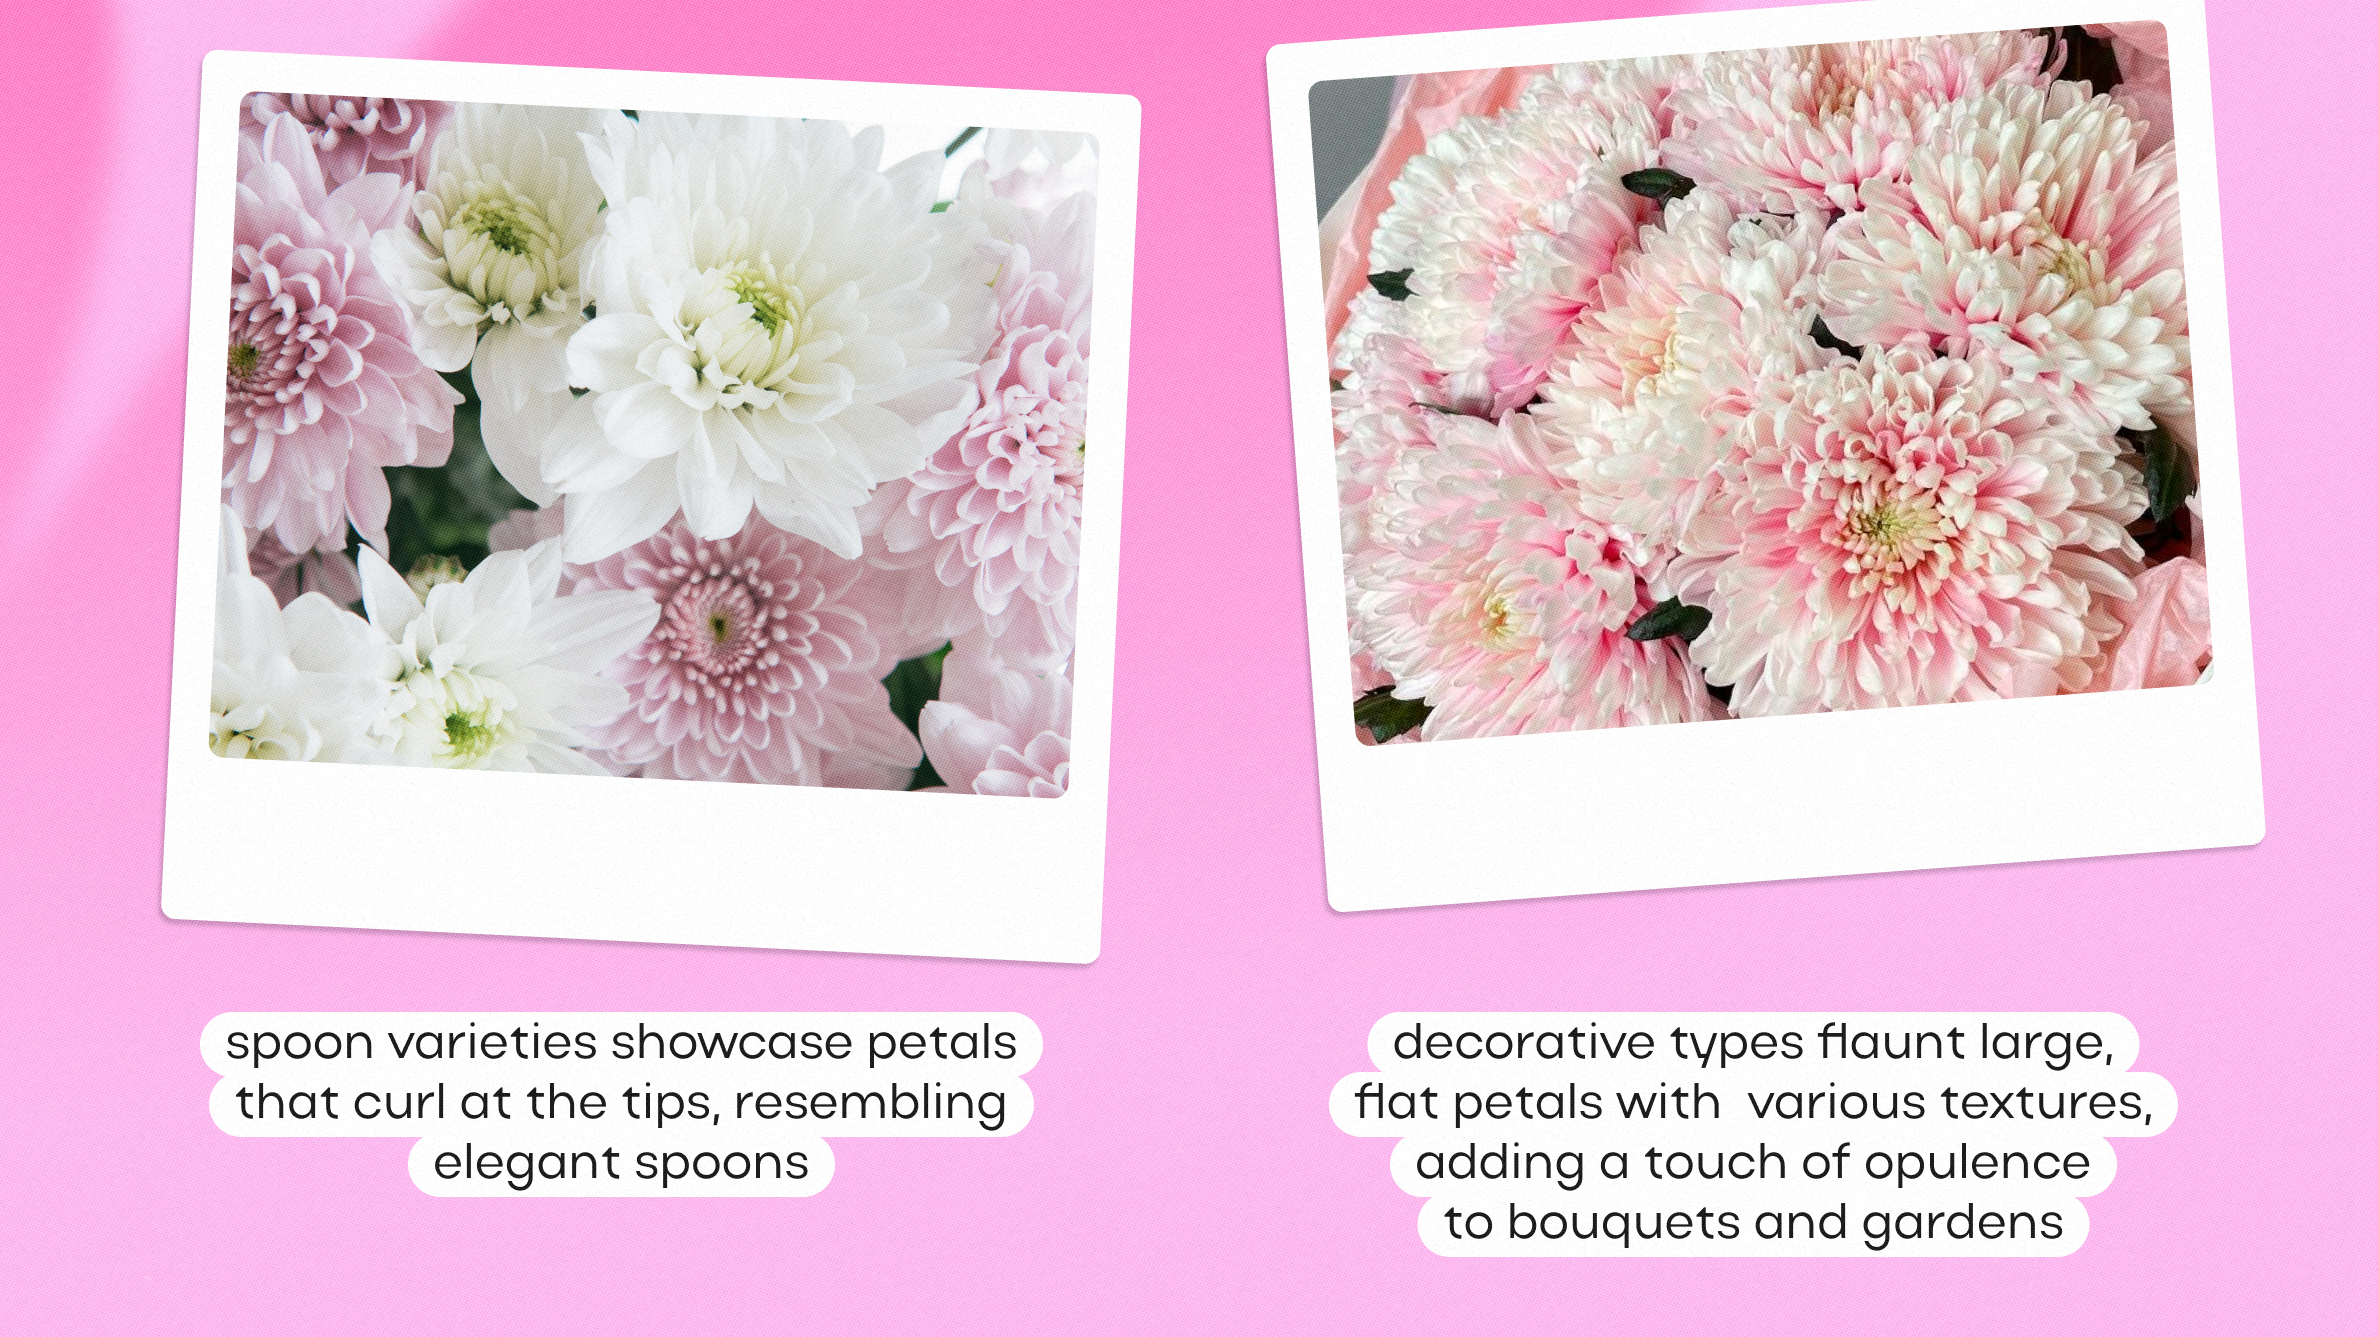  Chrysanthemum types<br>